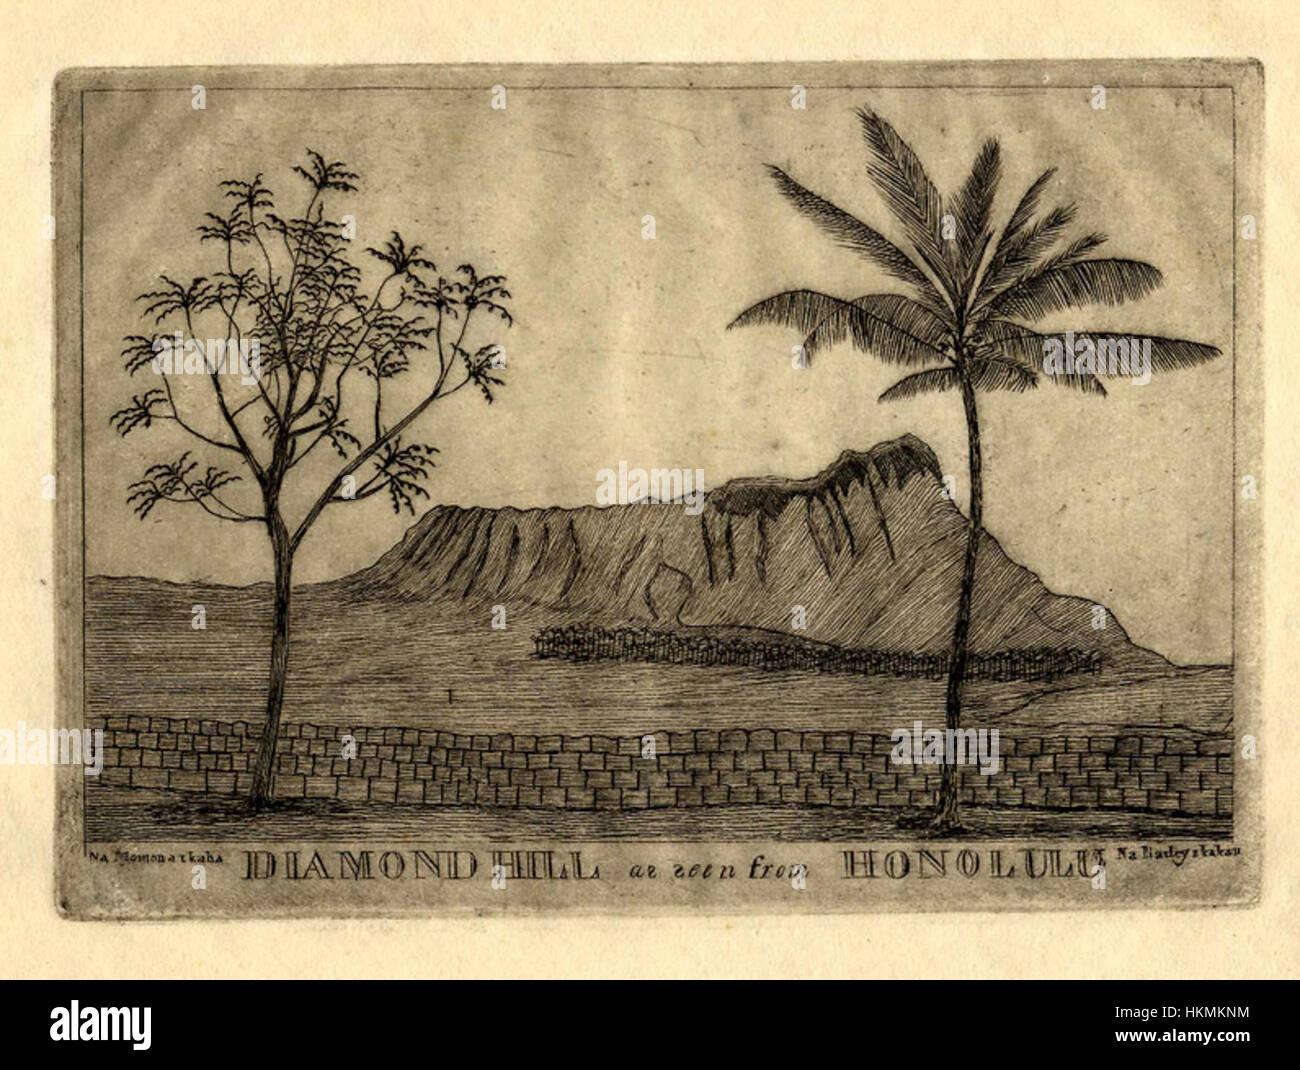 'Diamond Hill vu de Honolulu' par Edward Bailey, ch. 1850, gravure sur plaque de cuivre Banque D'Images